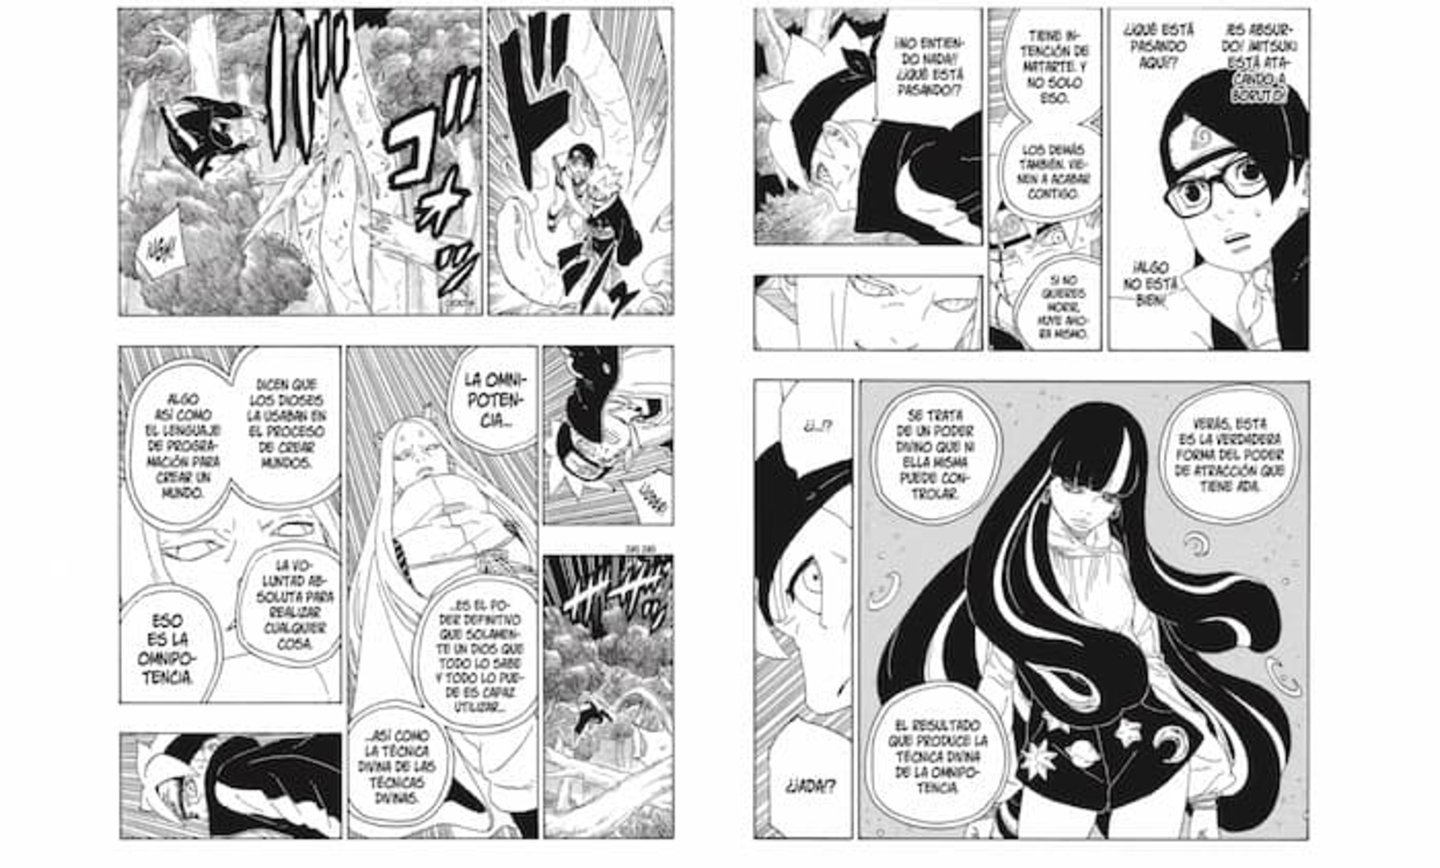 La serie de Boruto ha llevado las cosas demasiado lejos al introducir la "Omnipotencia" uno de los poderes más absurdos y rotos de toda la franquicia